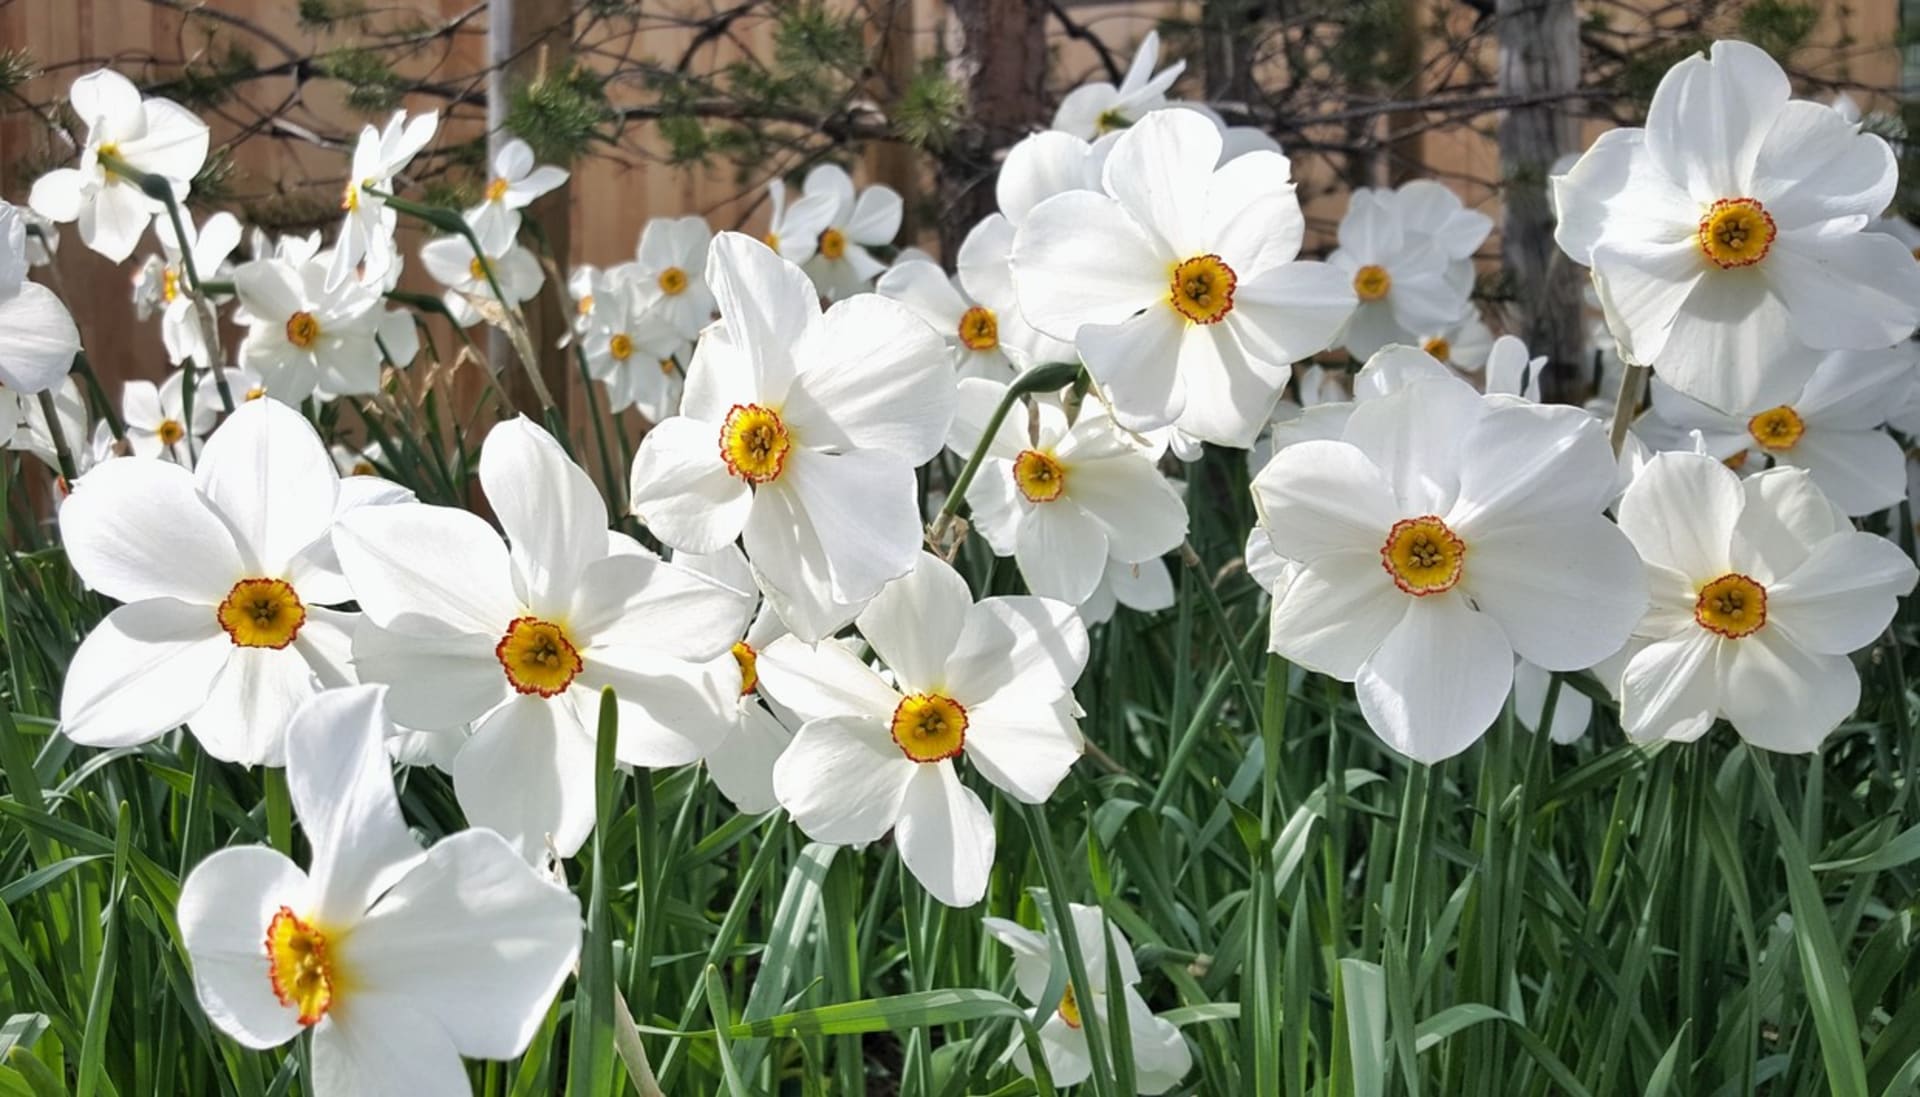 Narcis bílý (Narcissus poeticus): Nadčasově elegantní květy narcisu bílého či poetického příjemně sladce kořeněně voní a kvetou nejpozději ze všech narcisů. Vyniknou na zahradě i v nádobách, jsou báječnou květinou do vázy.